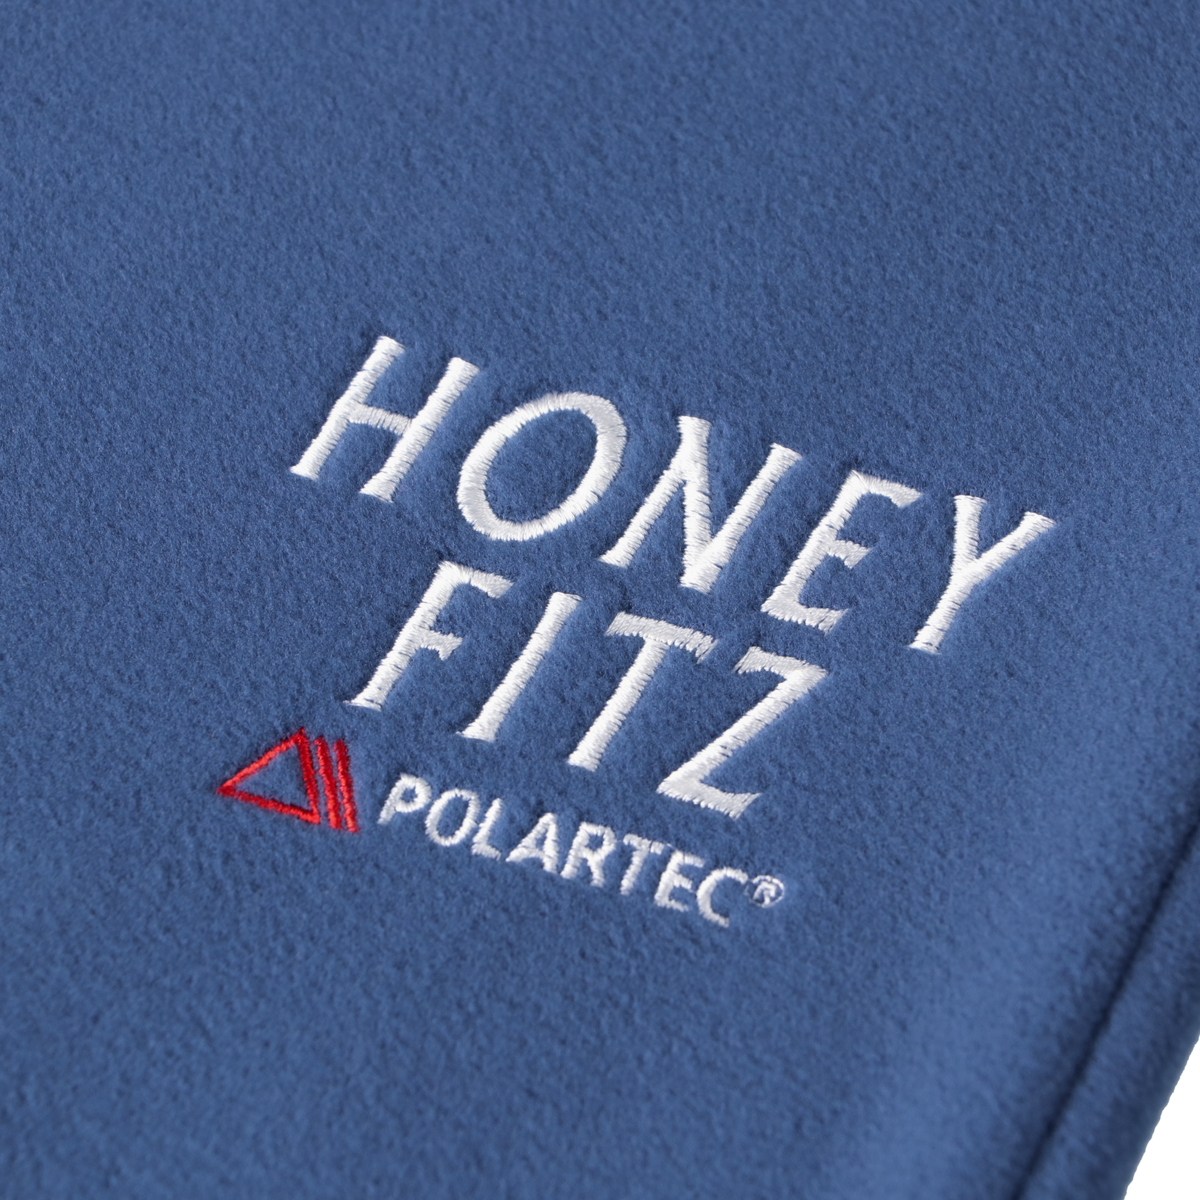 POLARTEC FLEECE SLACKS HOF-0028 BLUE